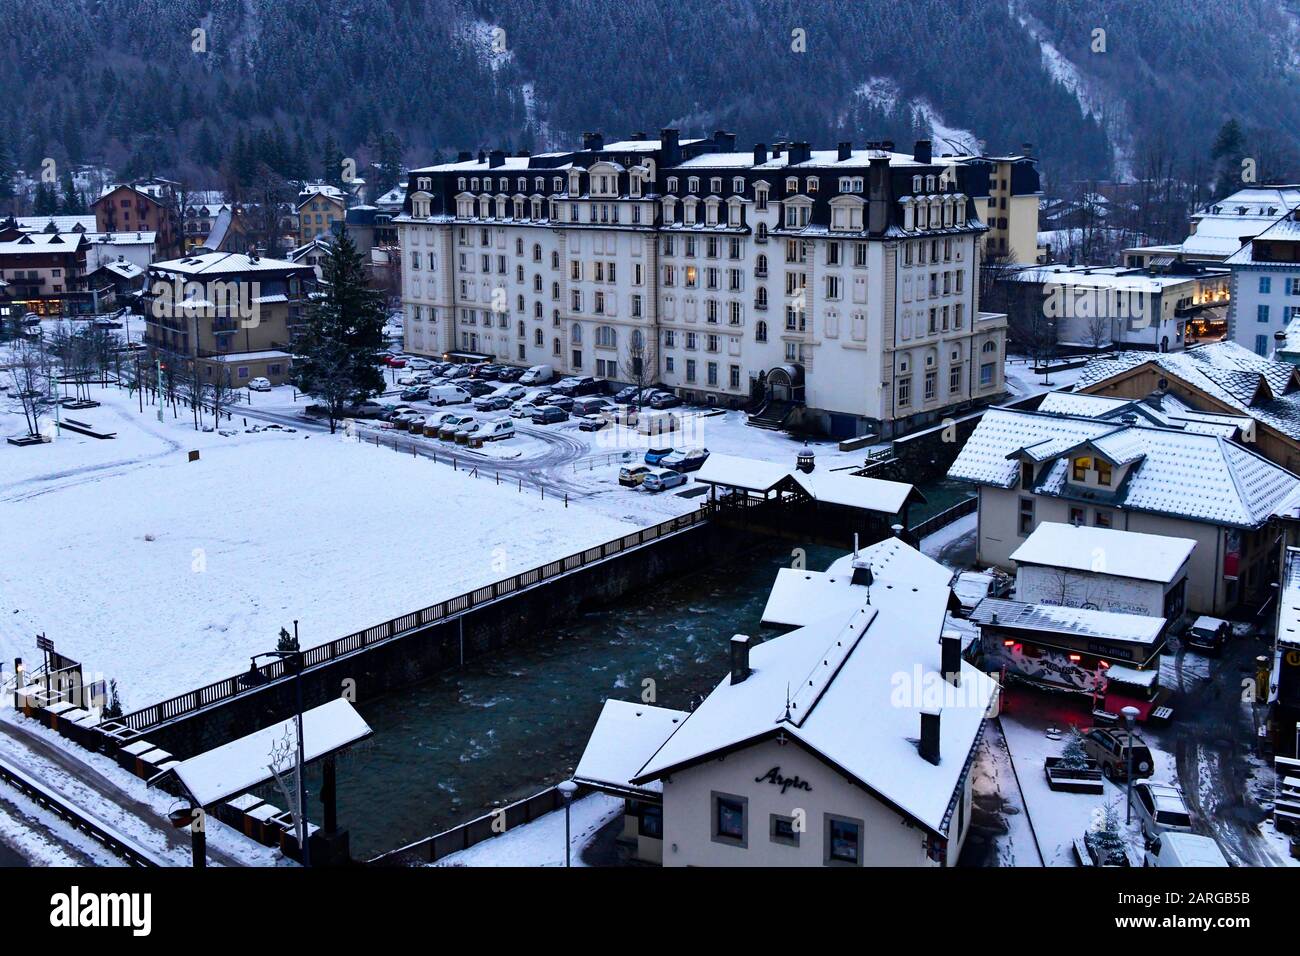 Das Alpine Museum Belle Epoque befindet sich in der alten Chamonix, der Haute-Savoie, den französischen Alpen, Frankreich und Europa. Stockfoto